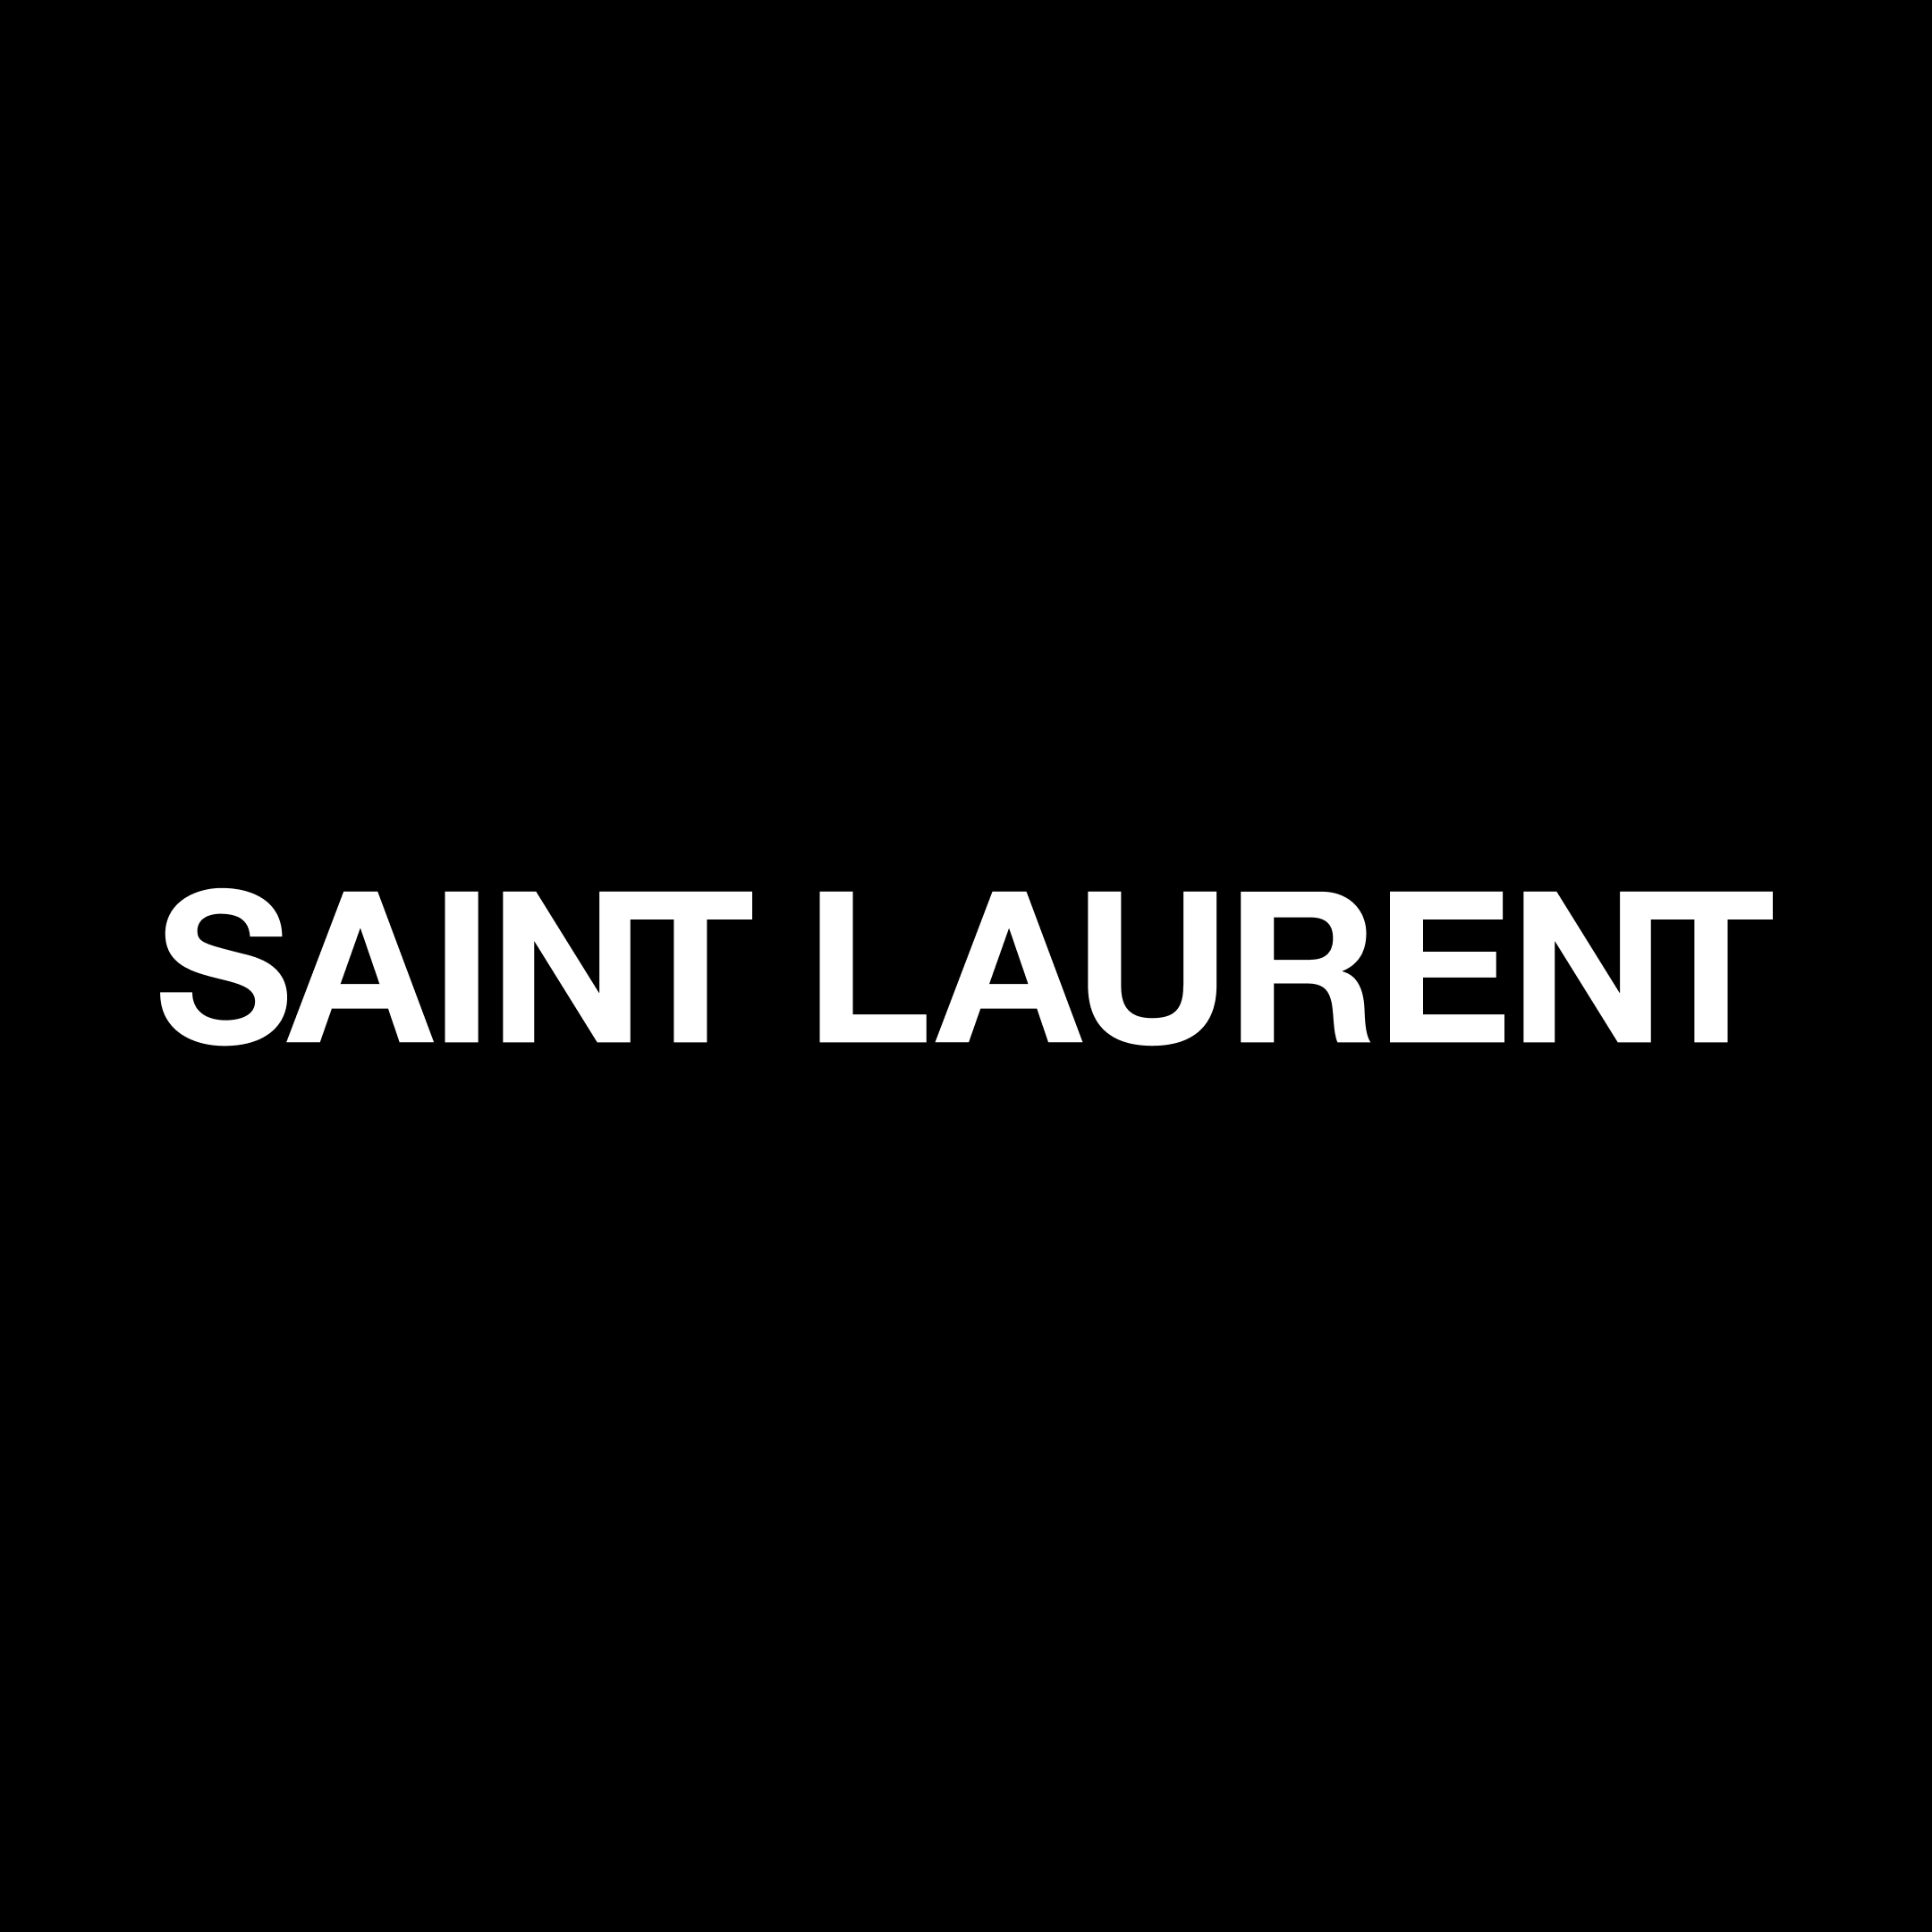 Saint Laurent - Wailea, HI 96753 - (808)500-6898 | ShowMeLocal.com